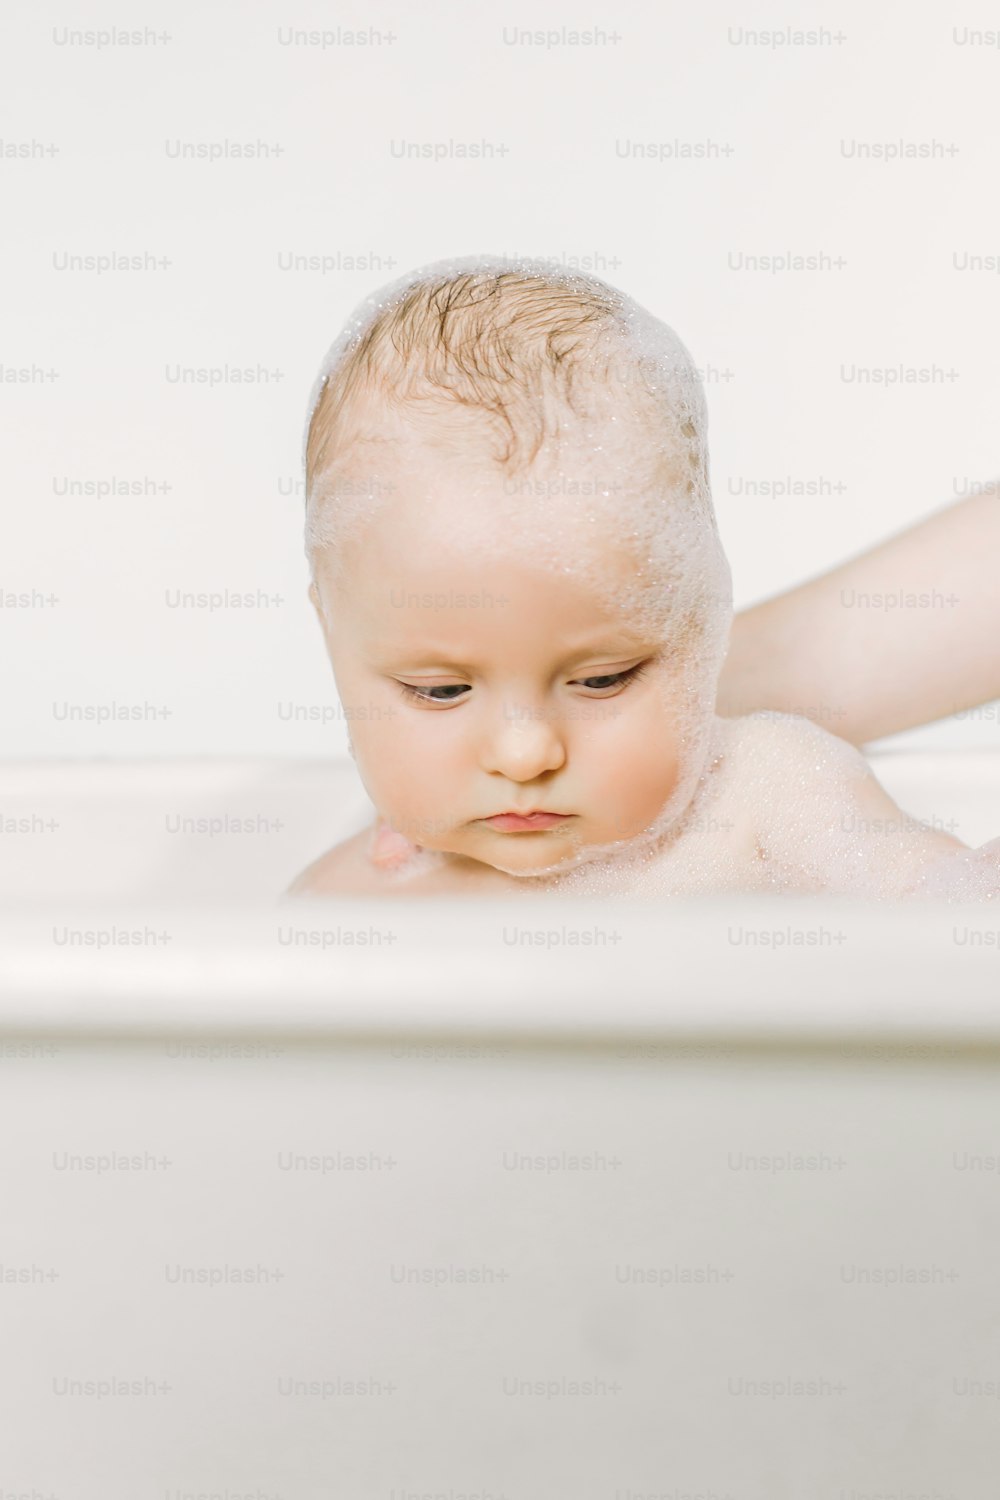 Bebé feliz riendo tomando un baño jugando con burbujas de espuma. Niño pequeño en una bañera. Lavado y baño de bebés. Higiene y cuidado de los niños pequeños.